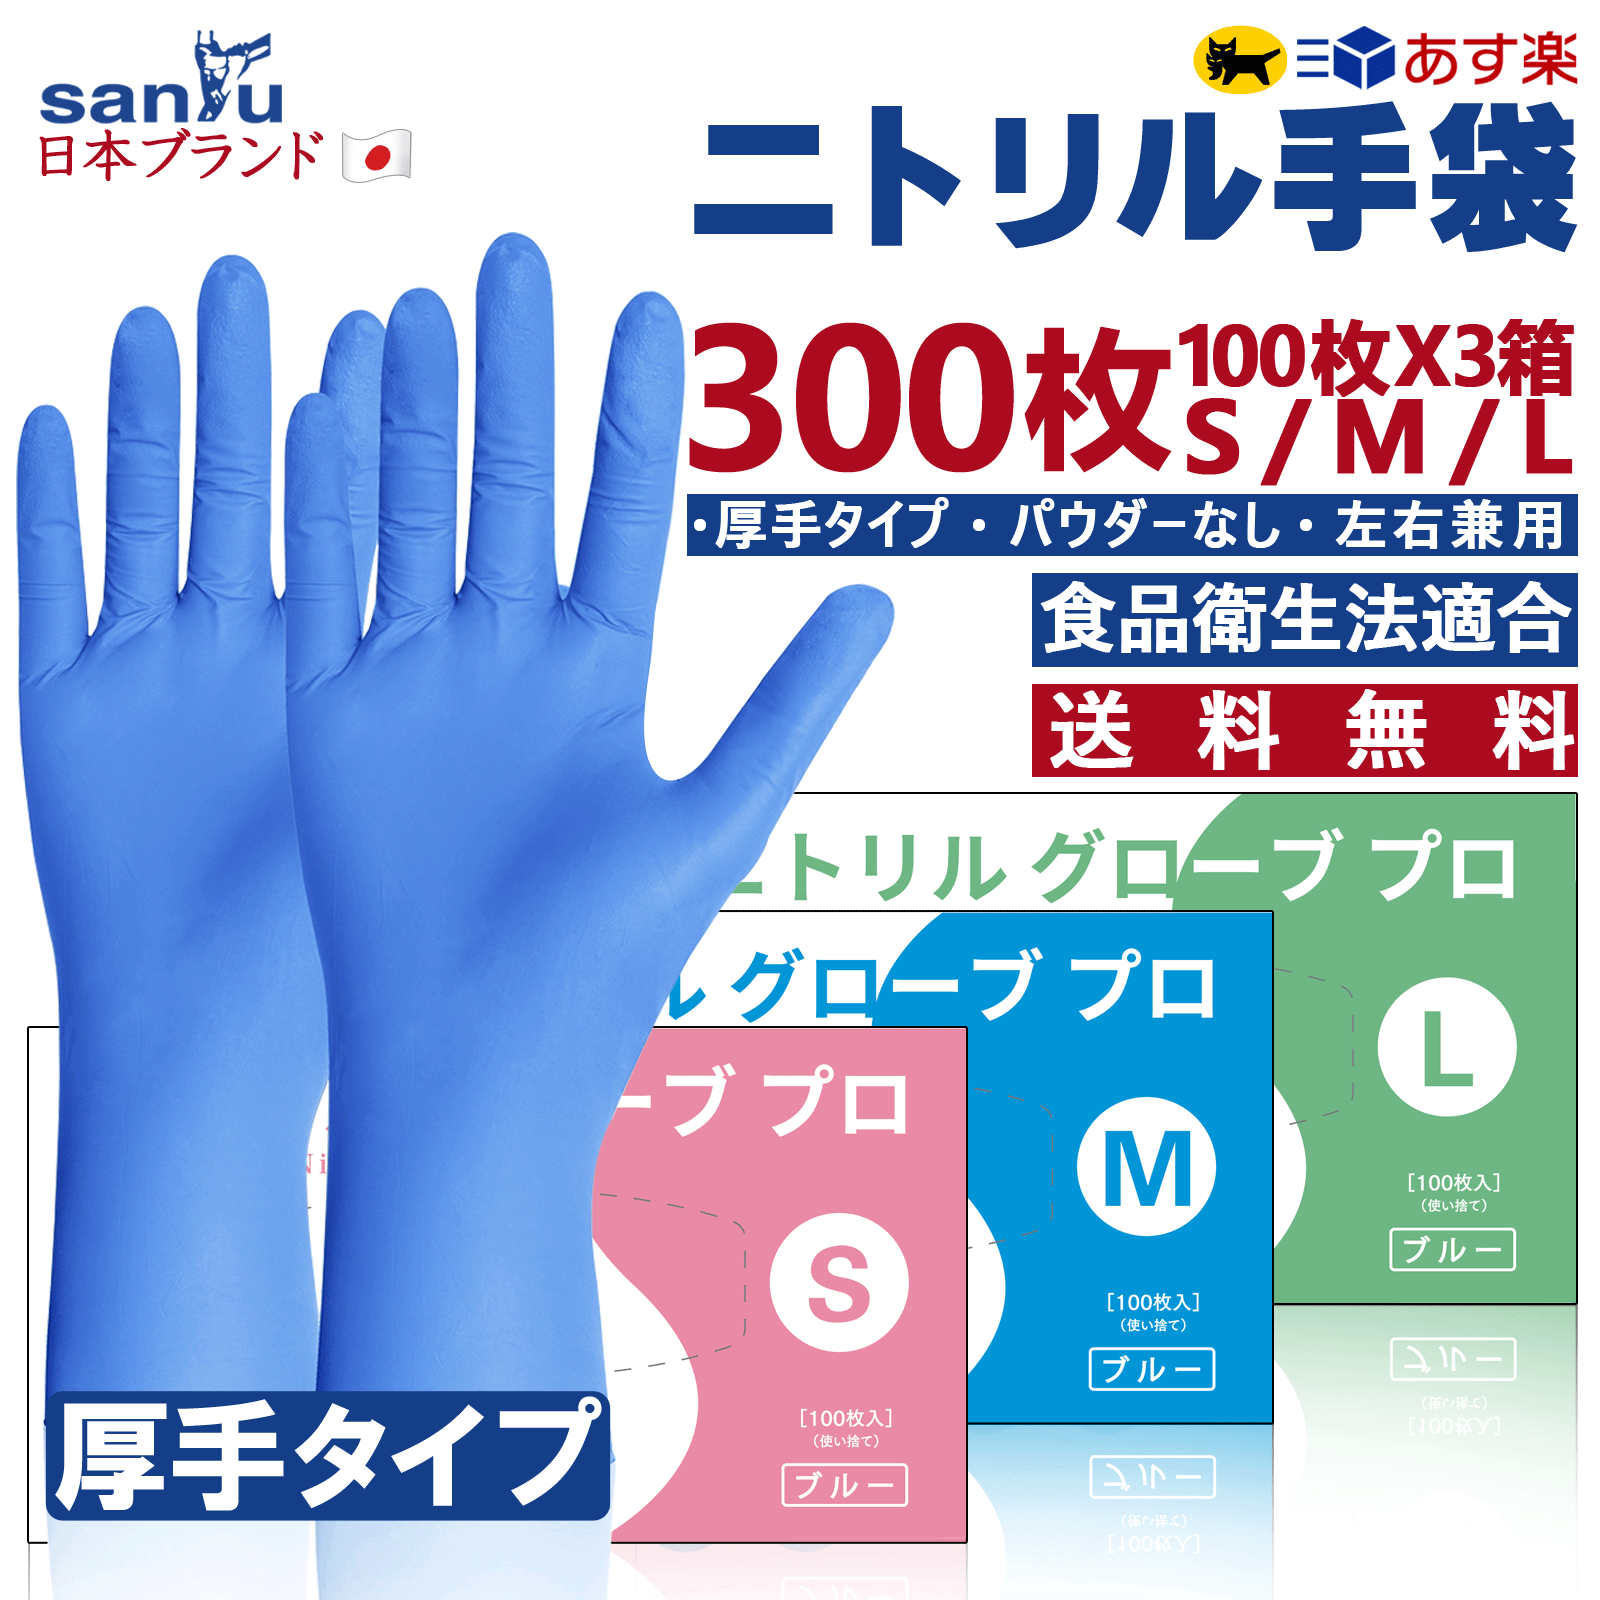 【300枚】ニトリル手袋 青 ブルー 使い捨て 粉なし パウダーフリー 